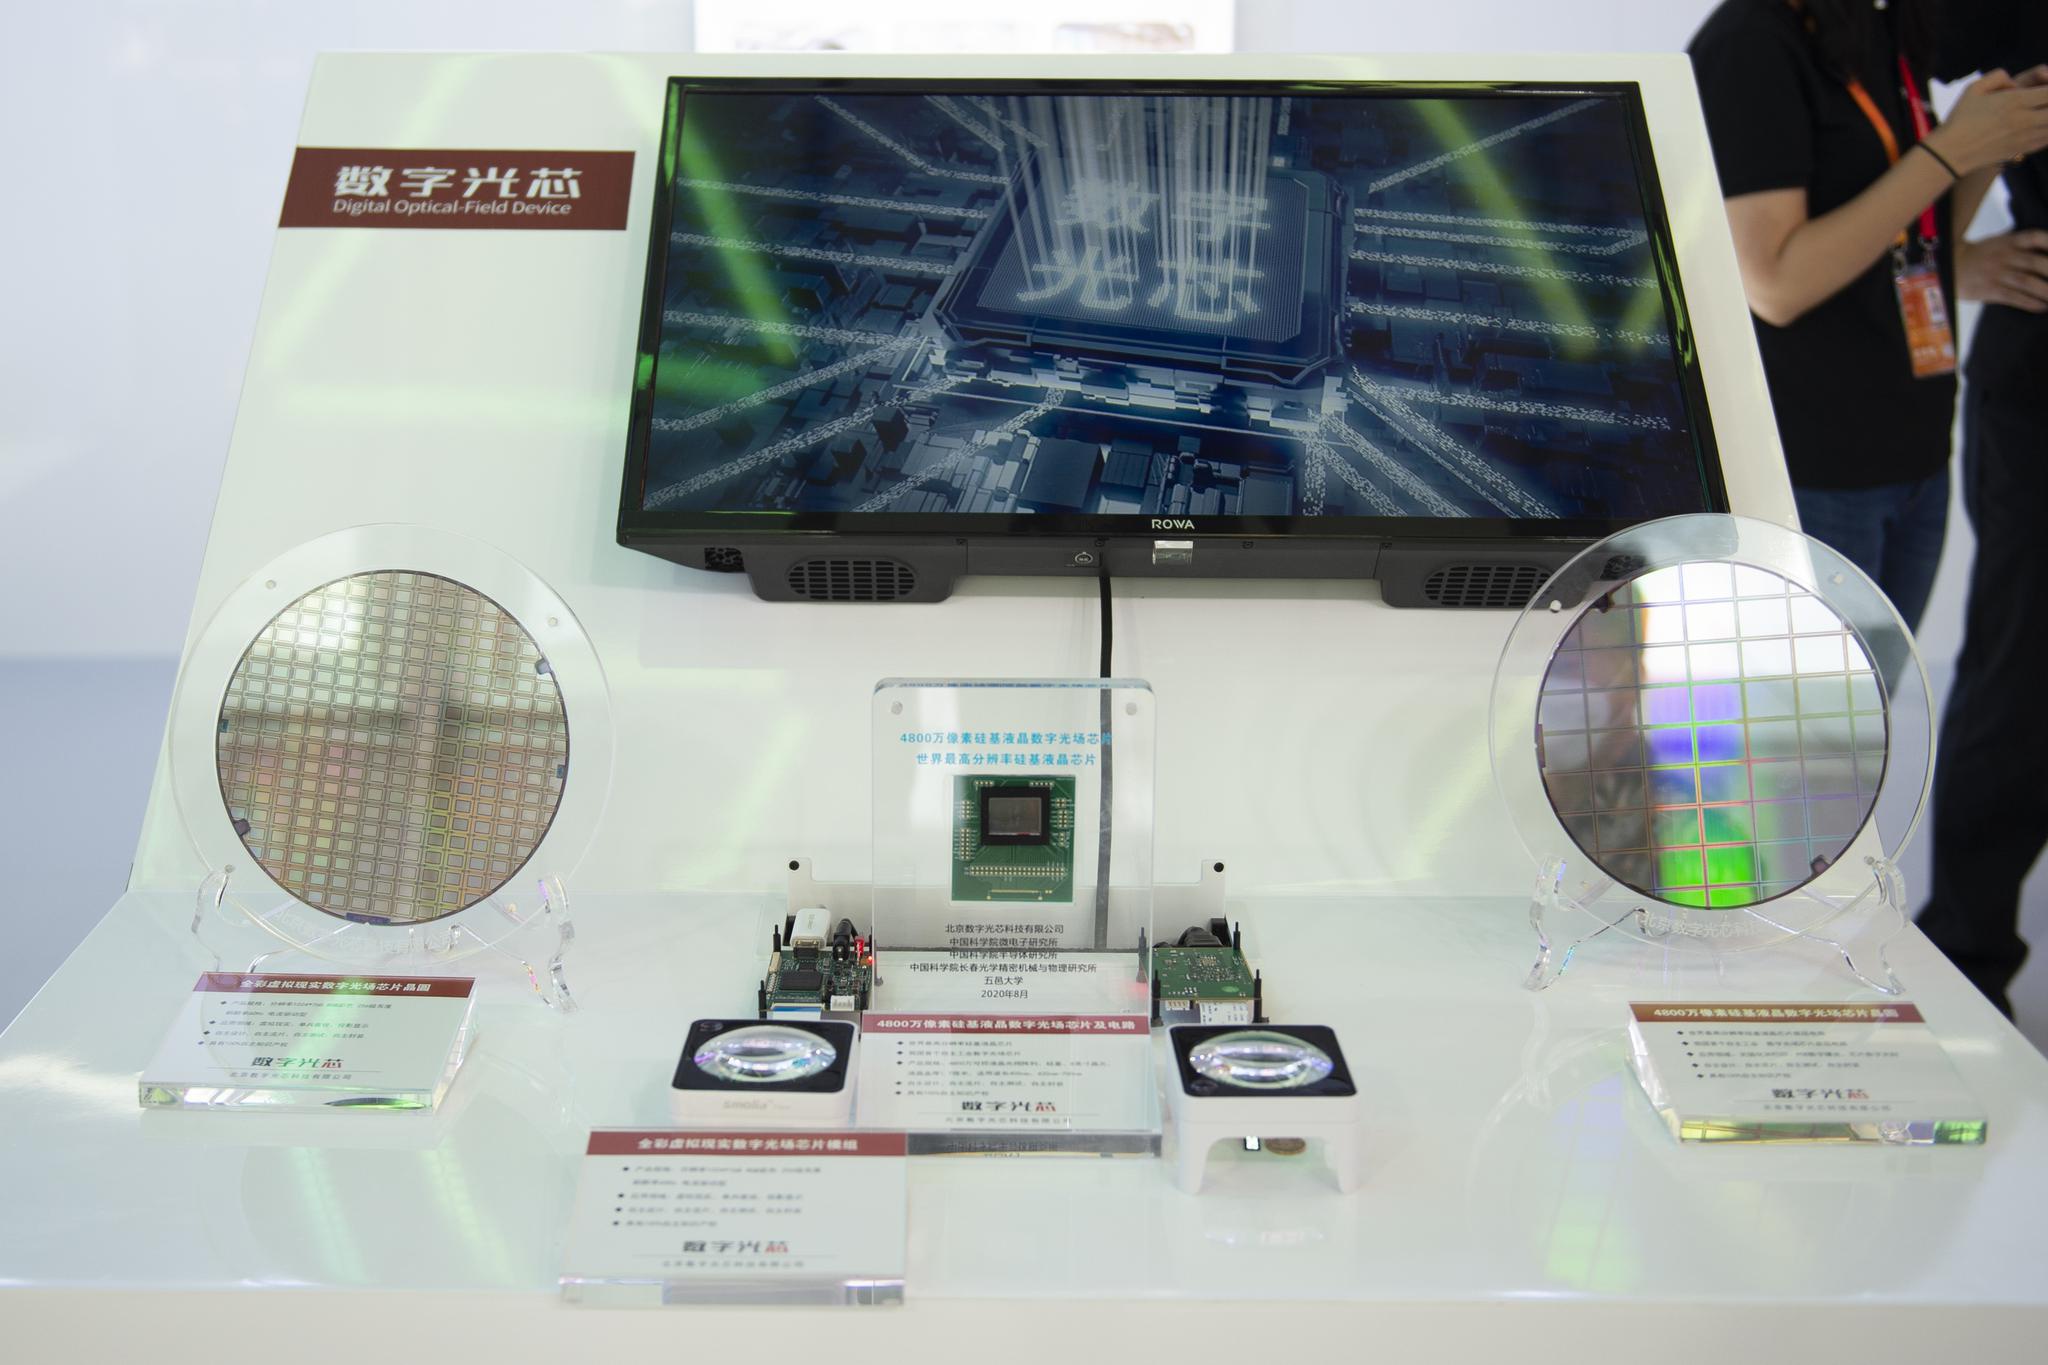  2020年9月，北京服贸会上展出的4800万像素硅基液晶数字光场芯片及电路。 澎湃影像